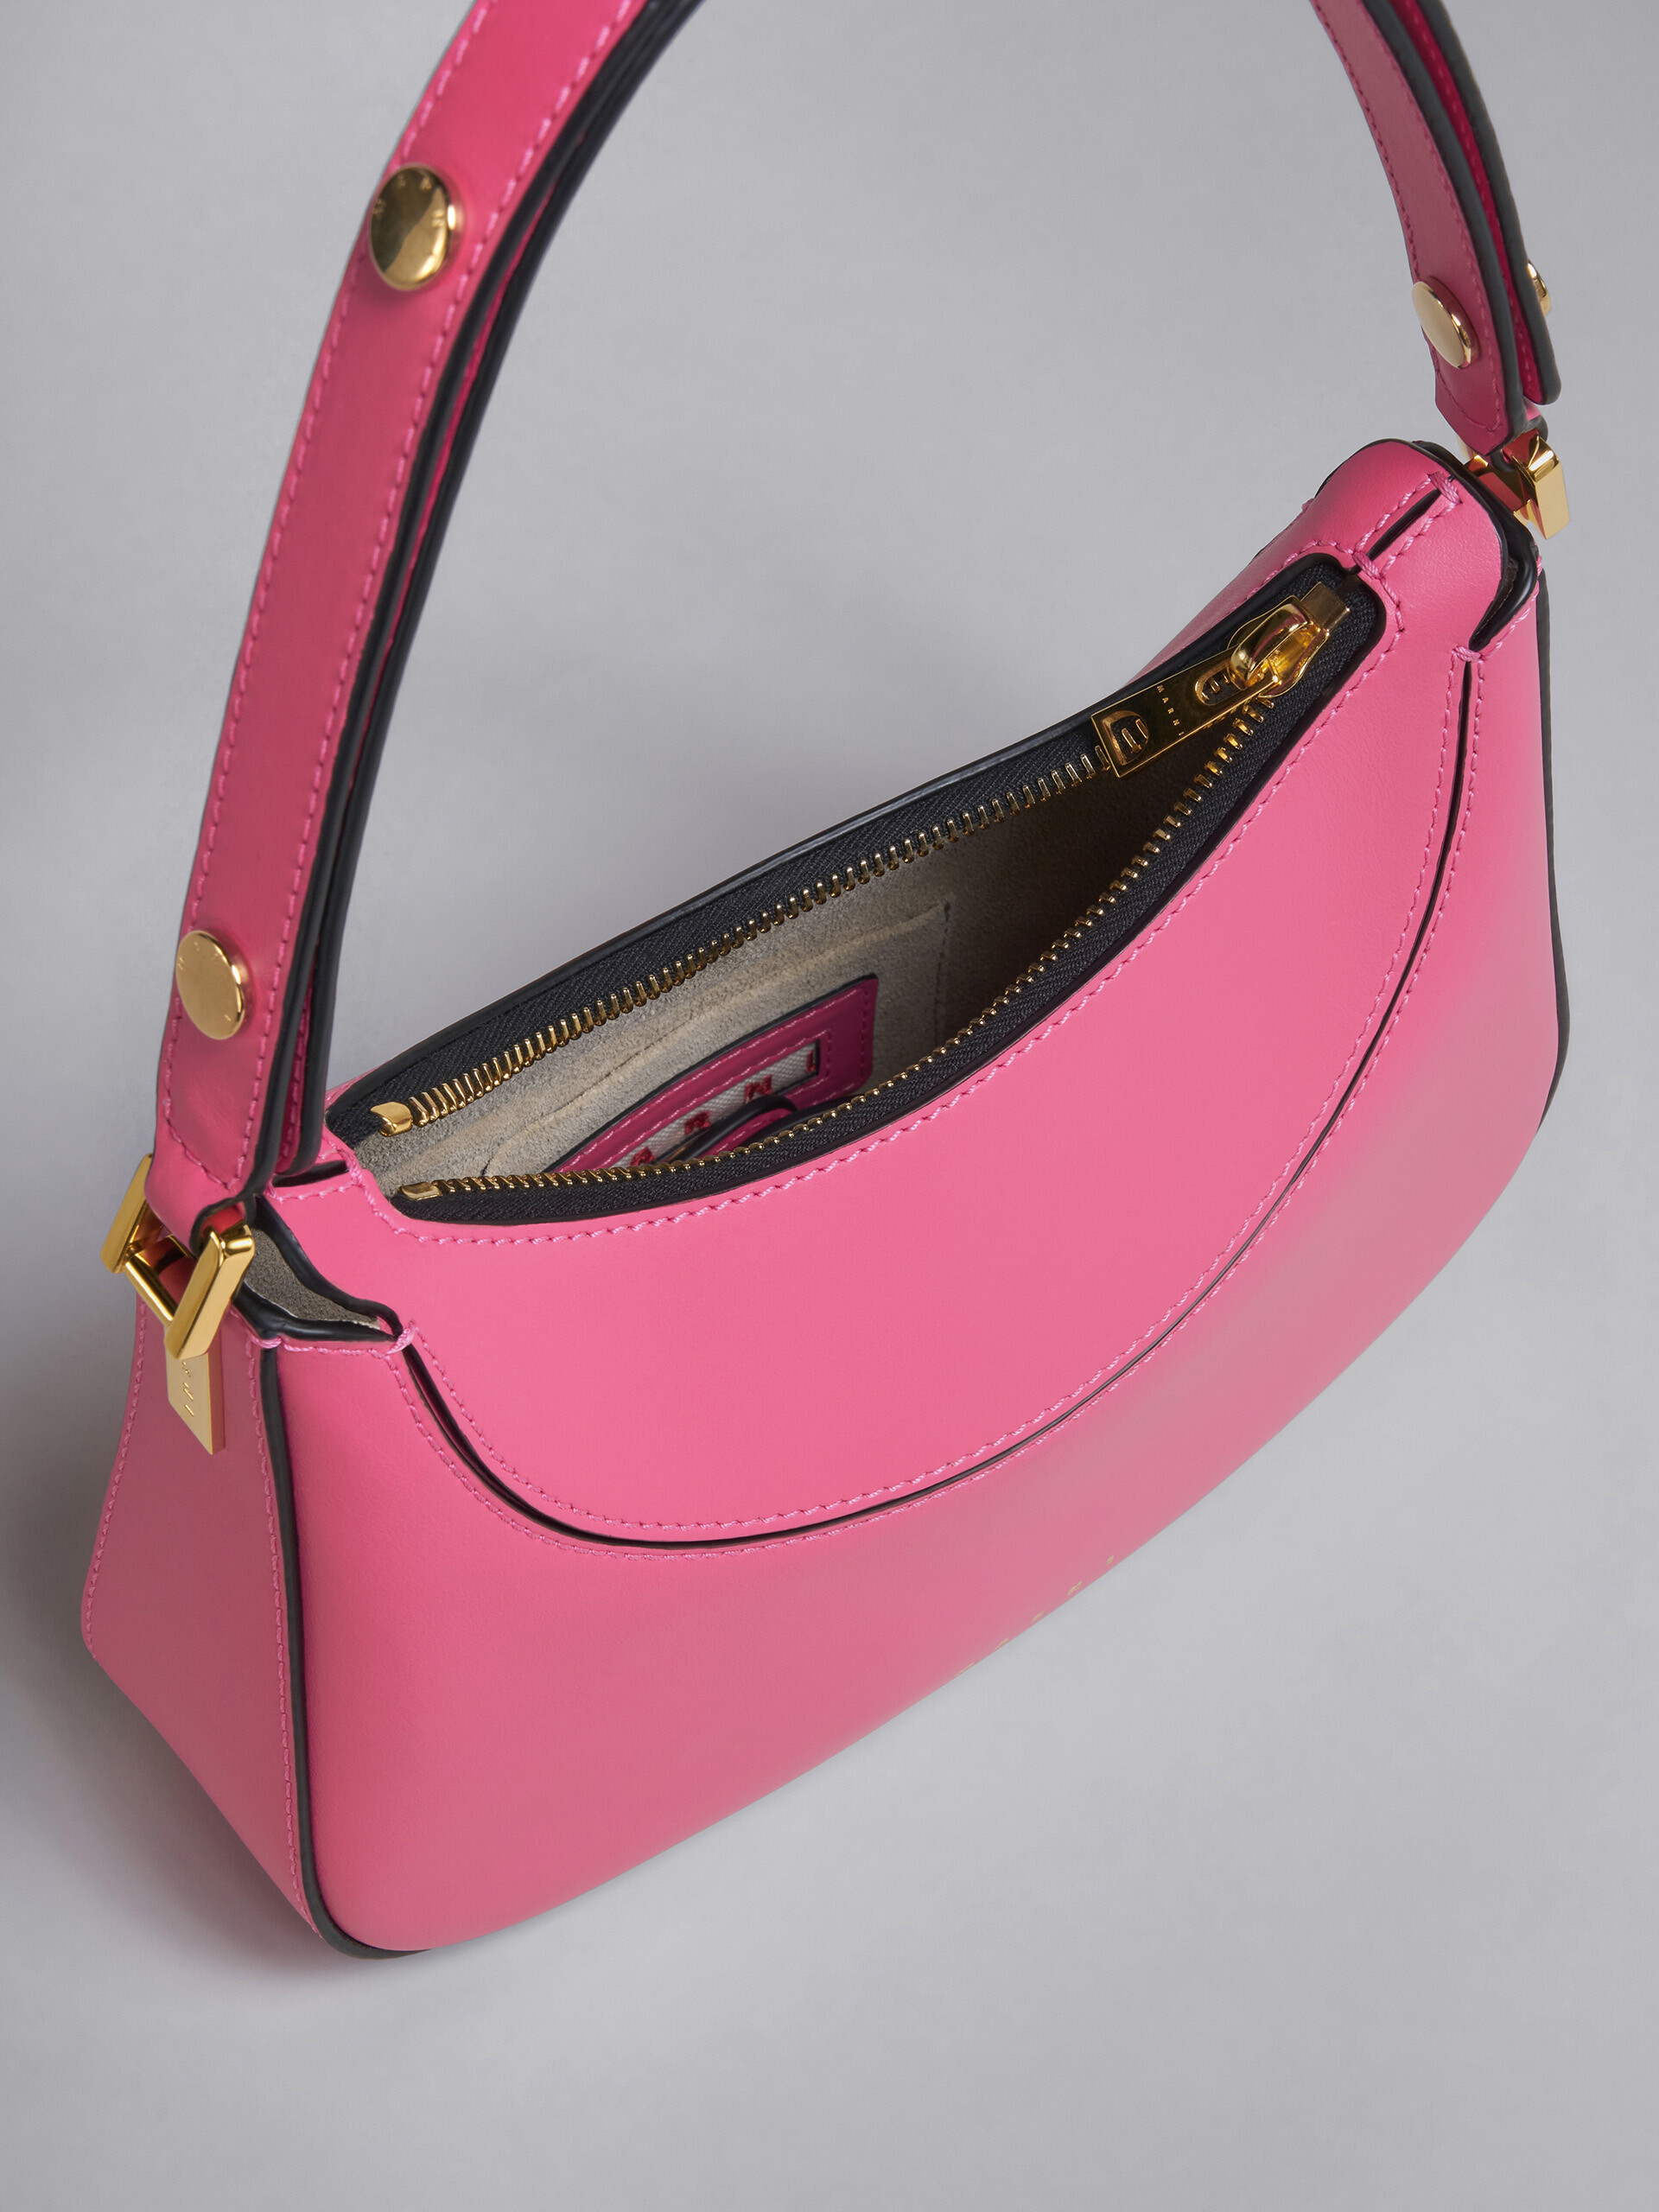 Milano bag mini in pelle rosa - Borse a mano - Image 4